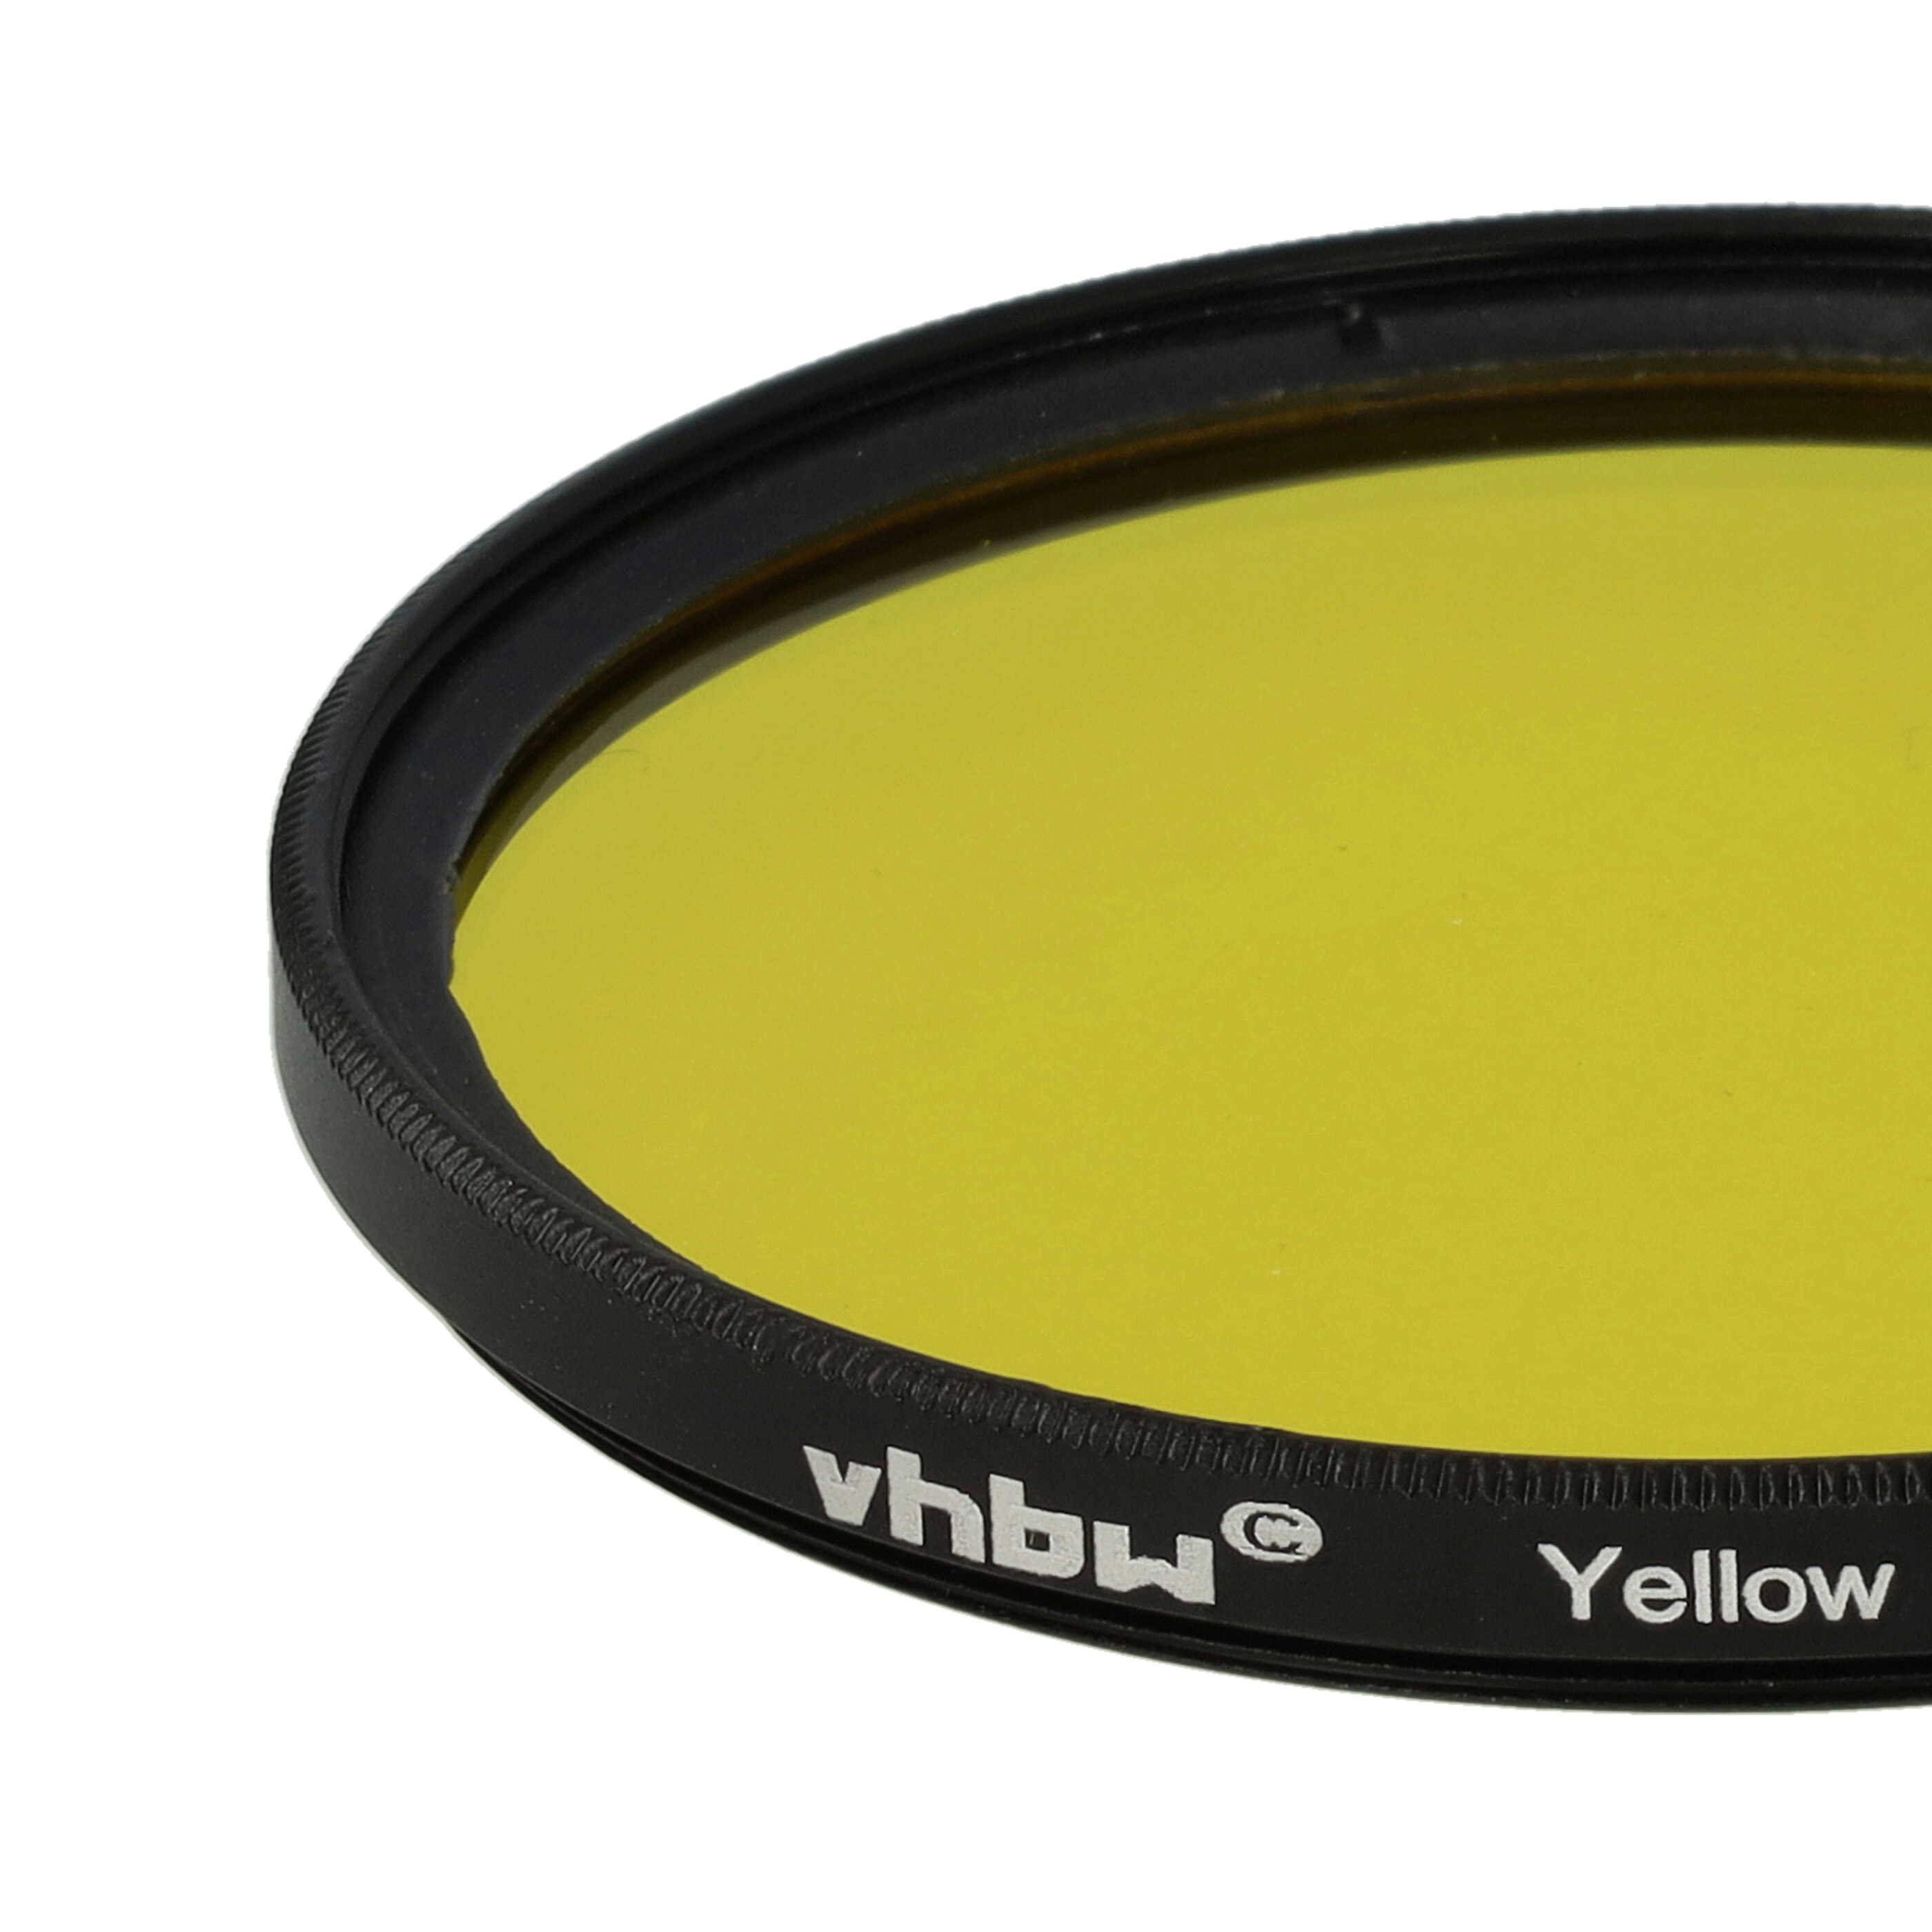 Filtro colorato per obiettivi fotocamera con filettatura da 62 mm - filtro giallo